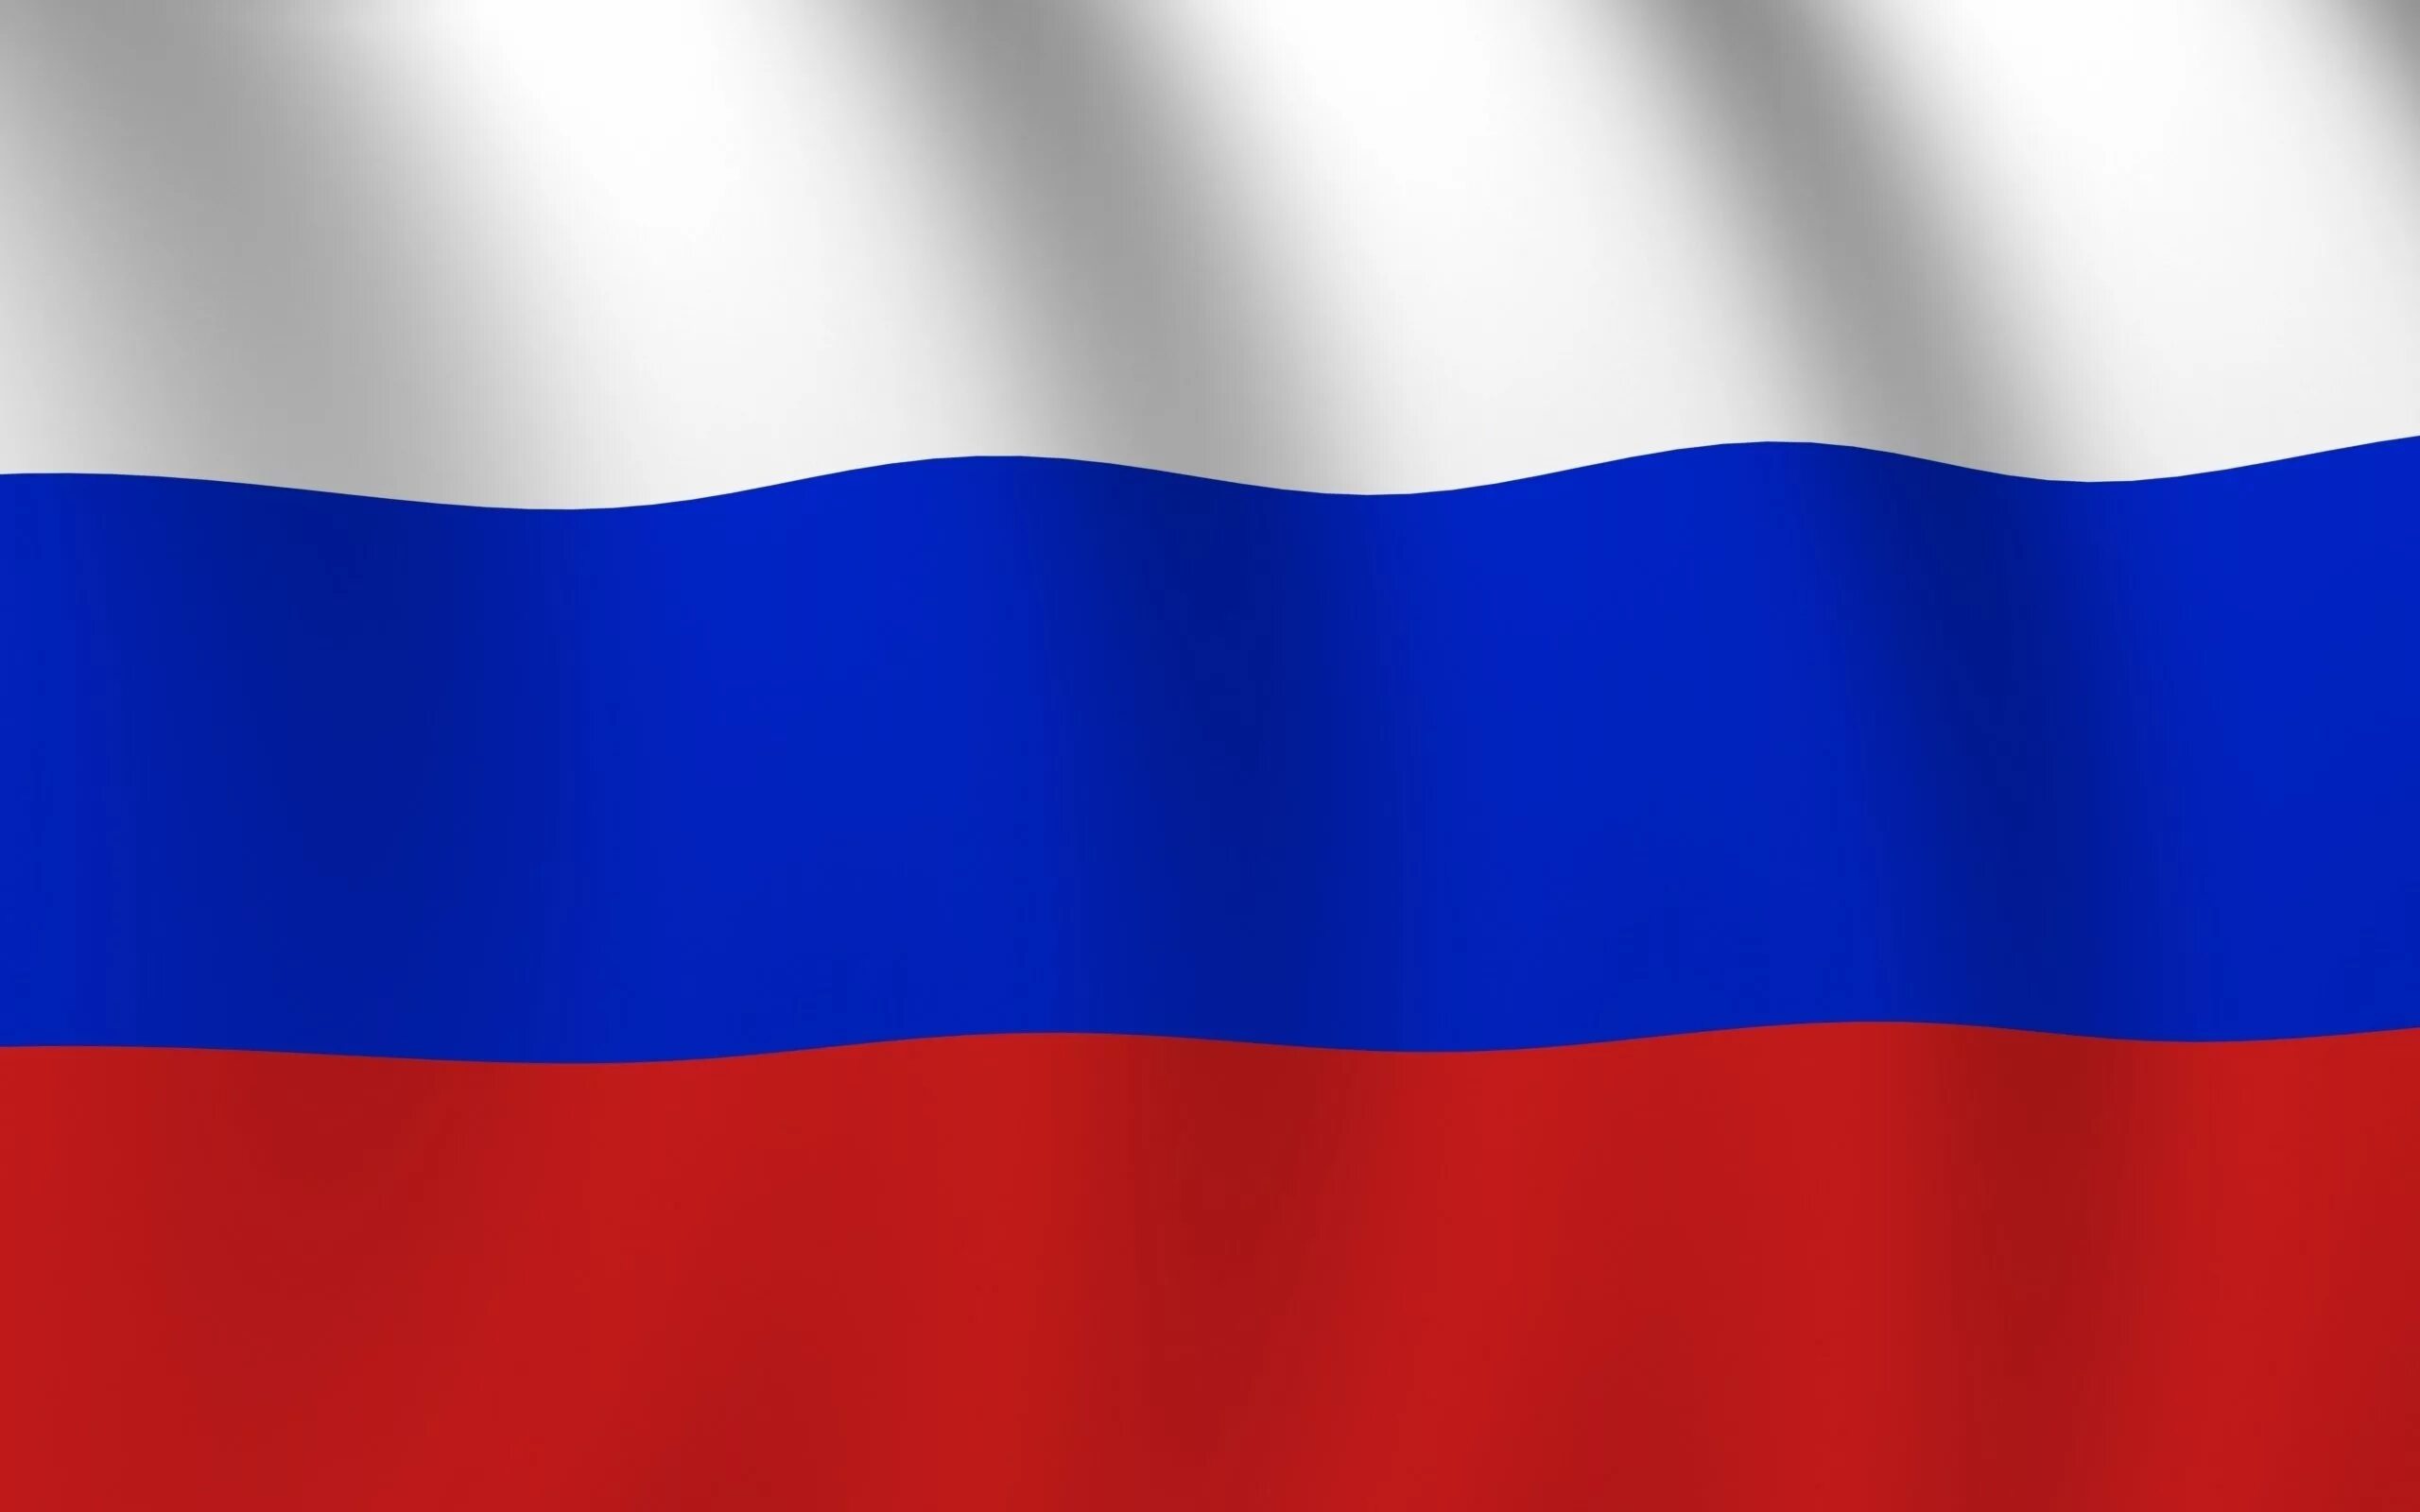 Ф̆̈л̆̈ӑ̈г̆̈ р̆̈о̆̈с̆̈с̆̈й̈й̈. Флаг России. Флаг Триколор России. Флига России.